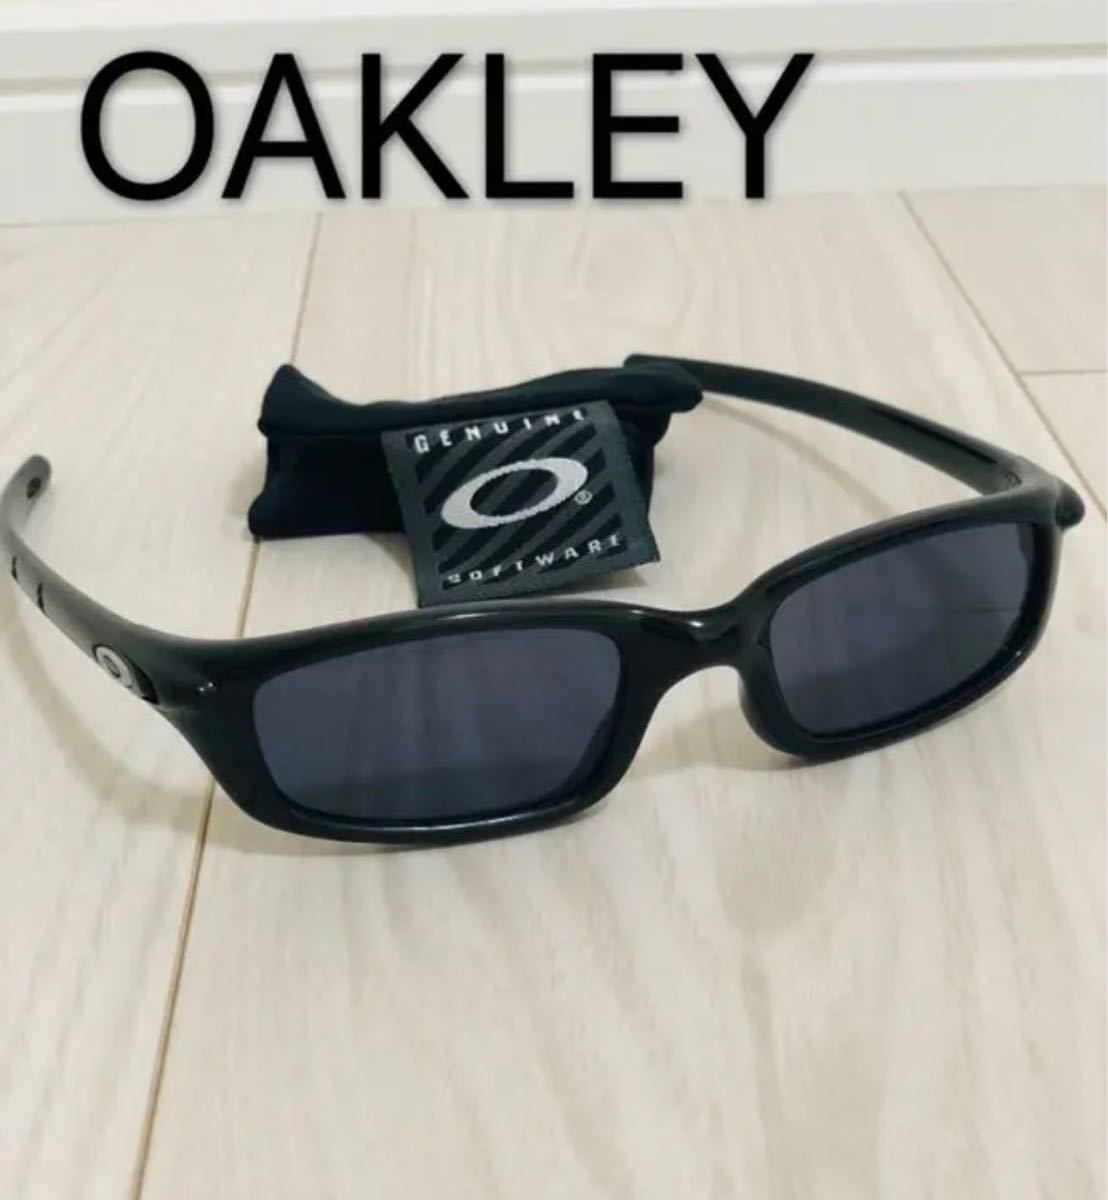 OAKLEY オークリーサングラス アメリカ製